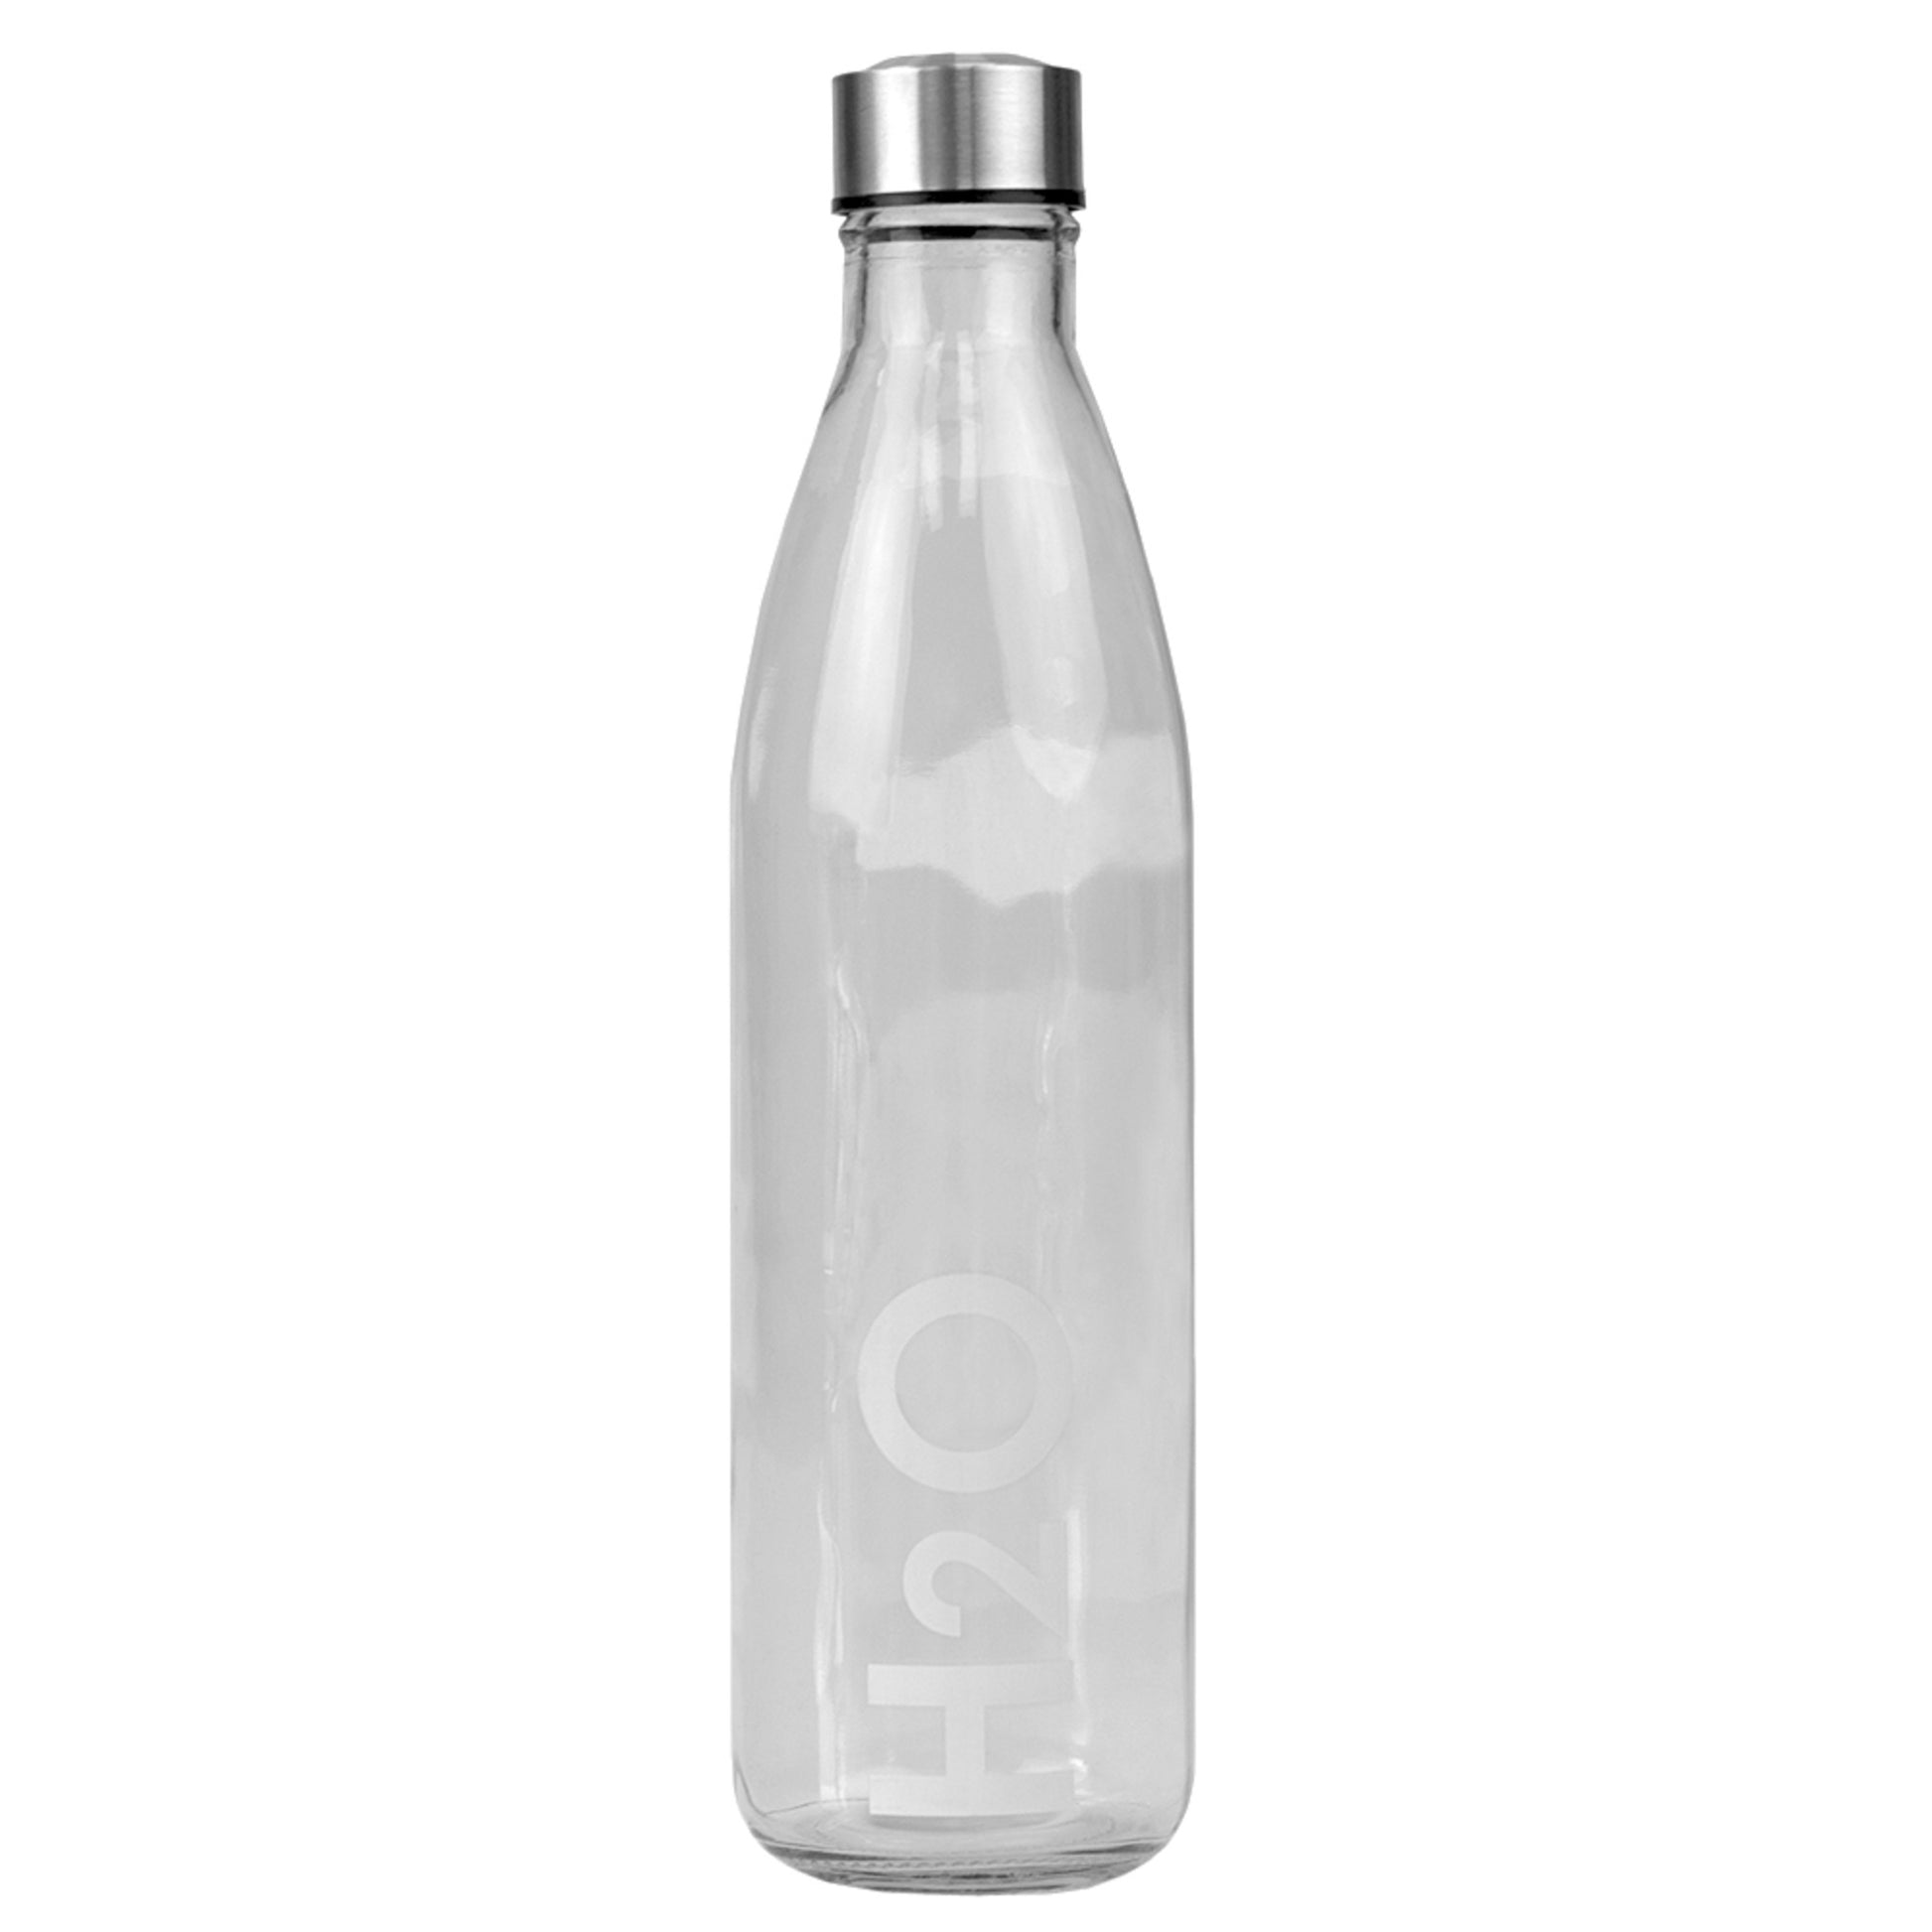 Home-it 16oz. Glass Water Bottle